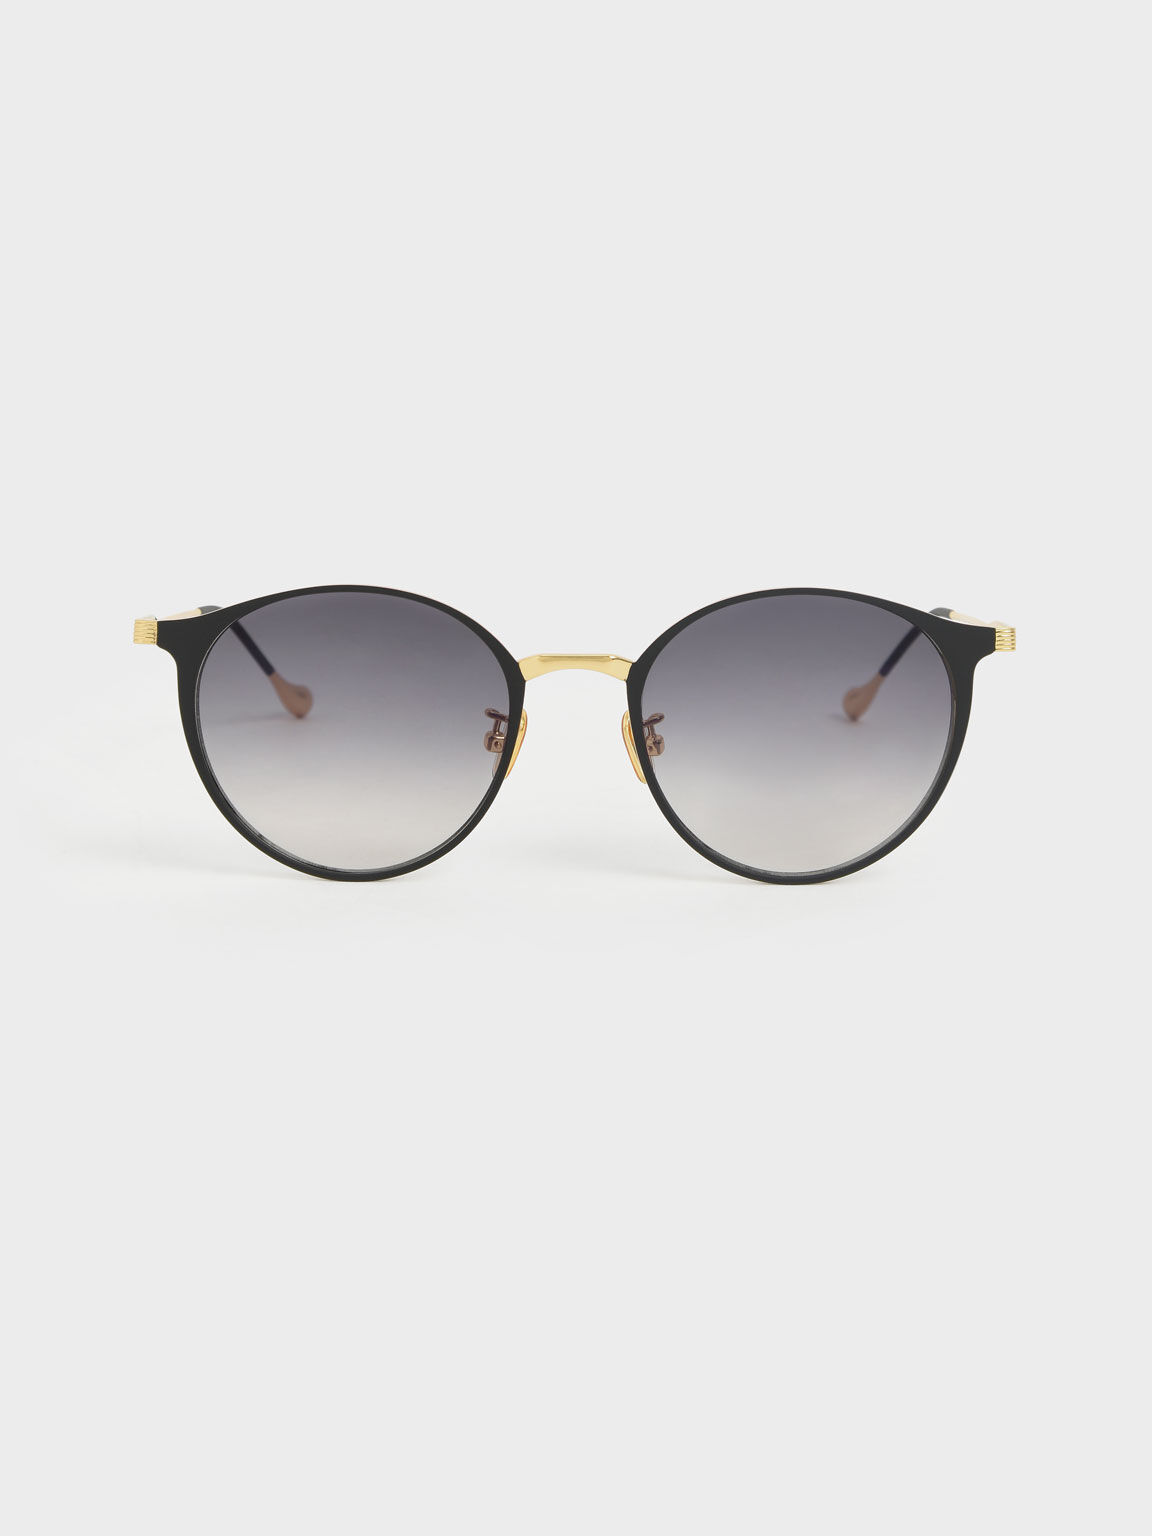 Tinted Round Sunglasses, Black, hi-res